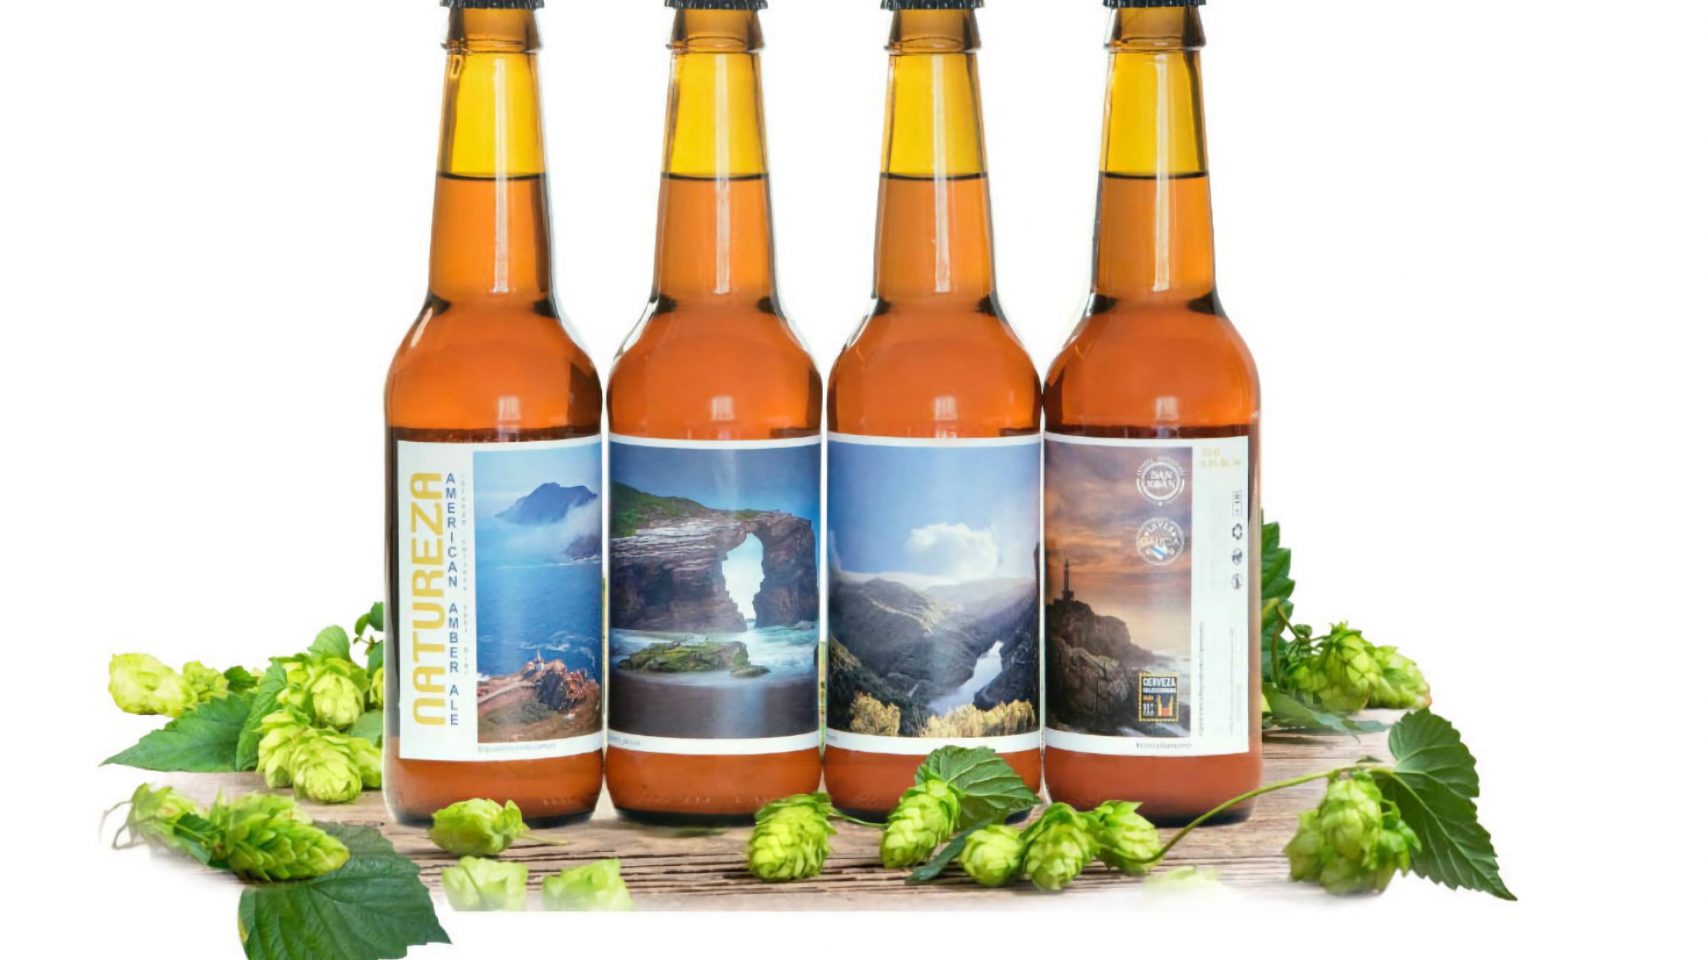 Las cervezas de la colección "Natureza".